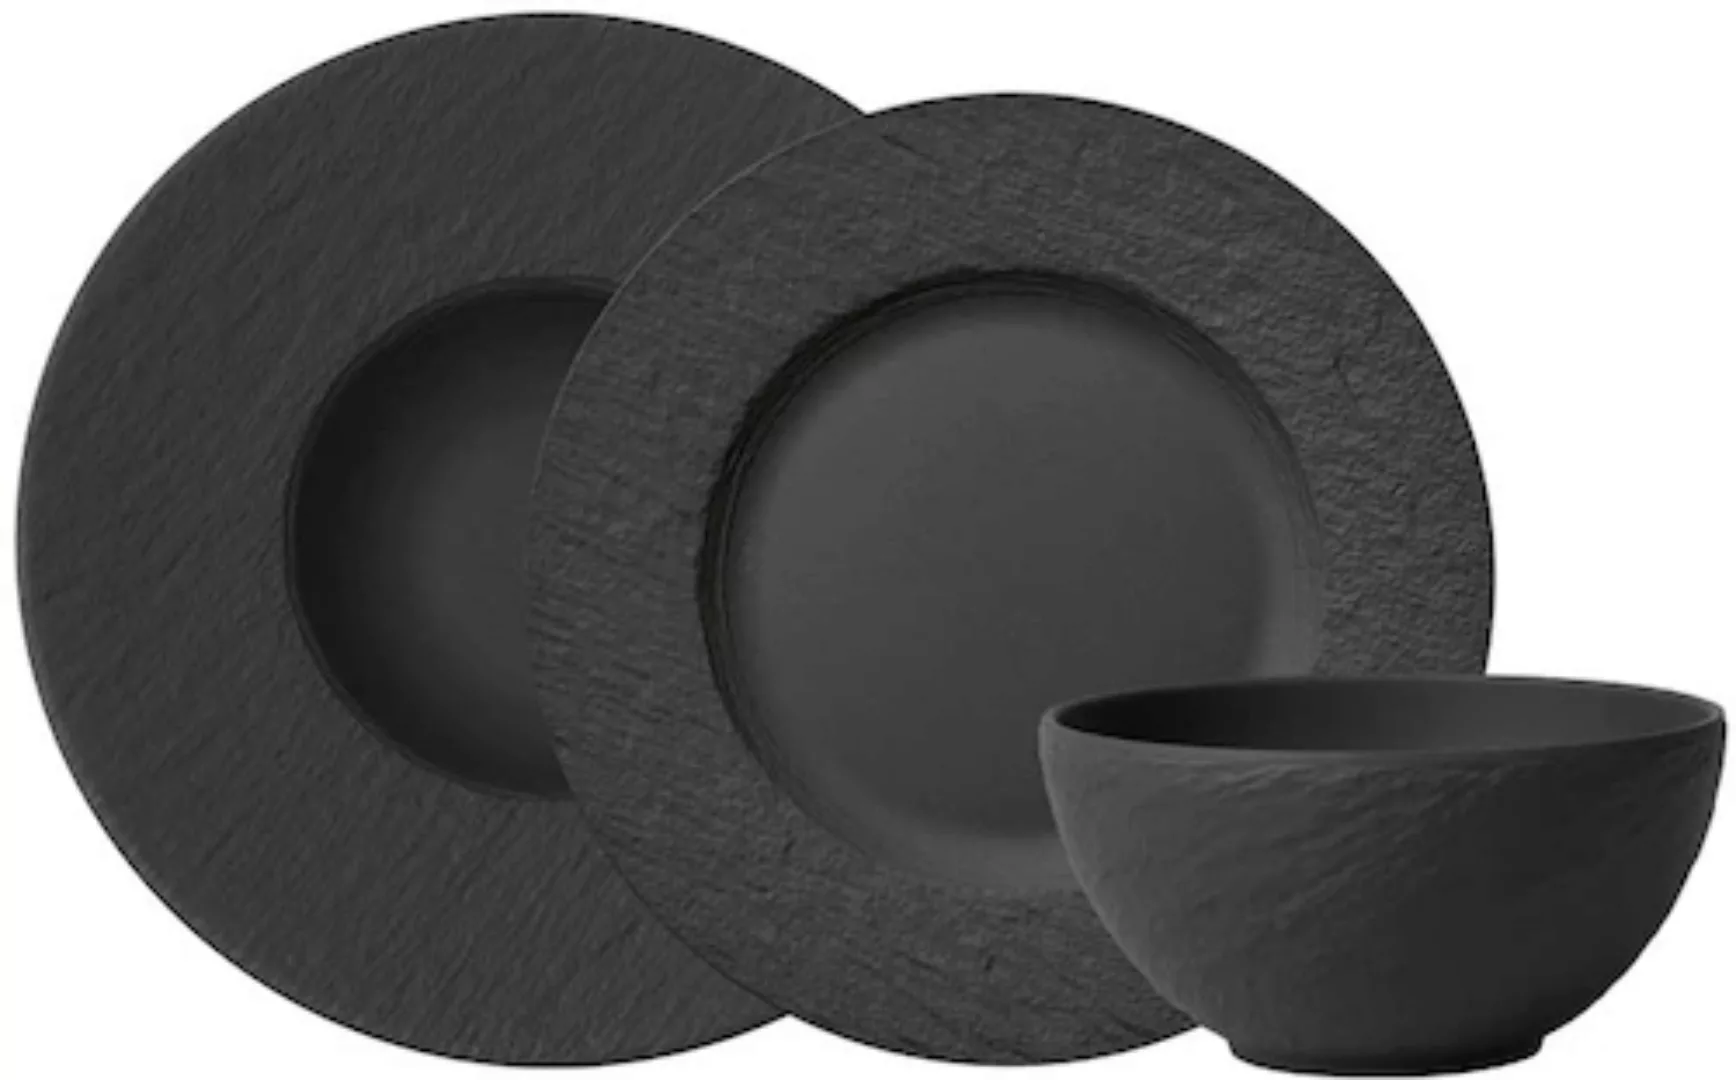 Villeroy & Boch Manufacture Rock Starter-Set 6-teilig schwarz Geschirrsets günstig online kaufen